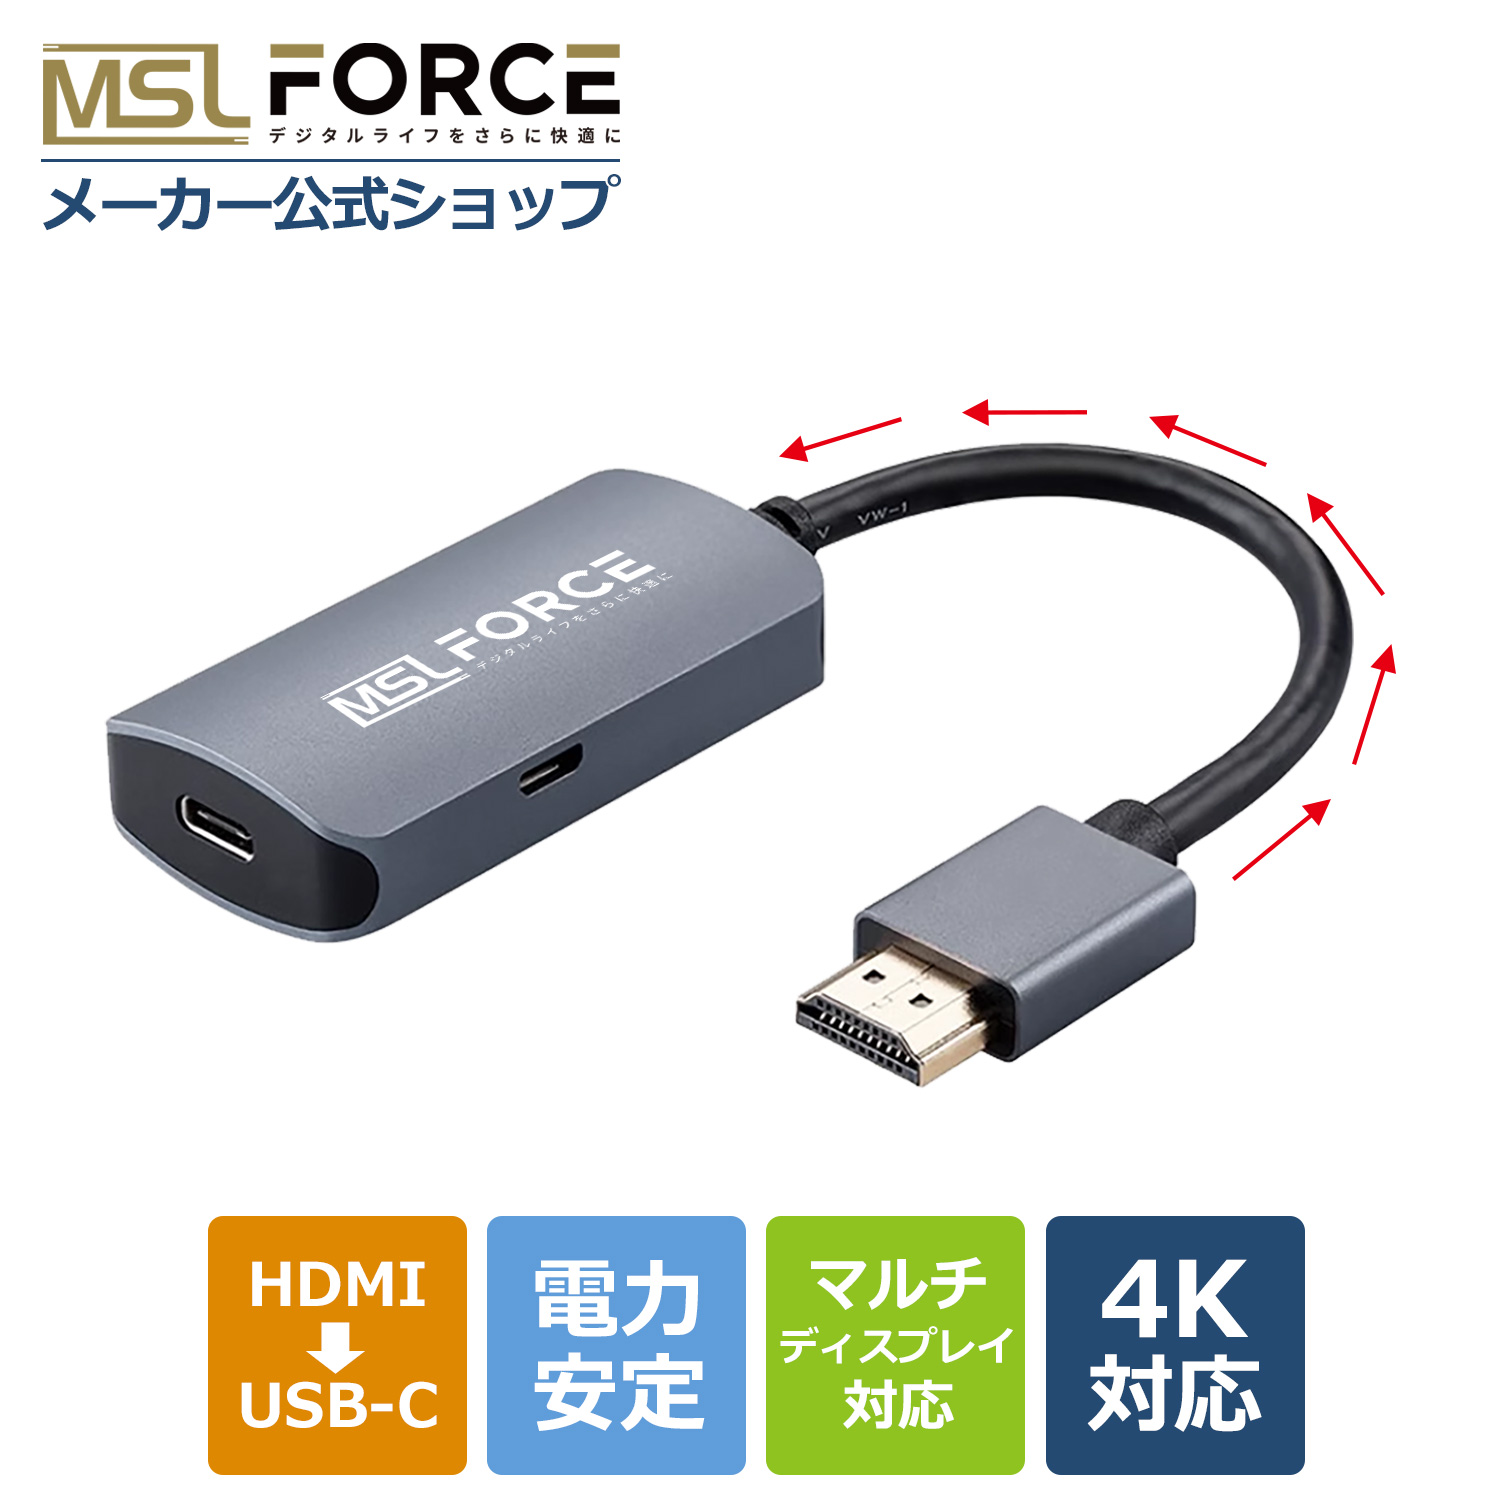 本日最大600円引き HDMI to USB C Type-C変換アダプタ ウルトラHD 4K/60hz  モニター AI 搭載メガネ対応 Switch対応 適格請求書発行可 hd2usbc 送料無料｜mslforce